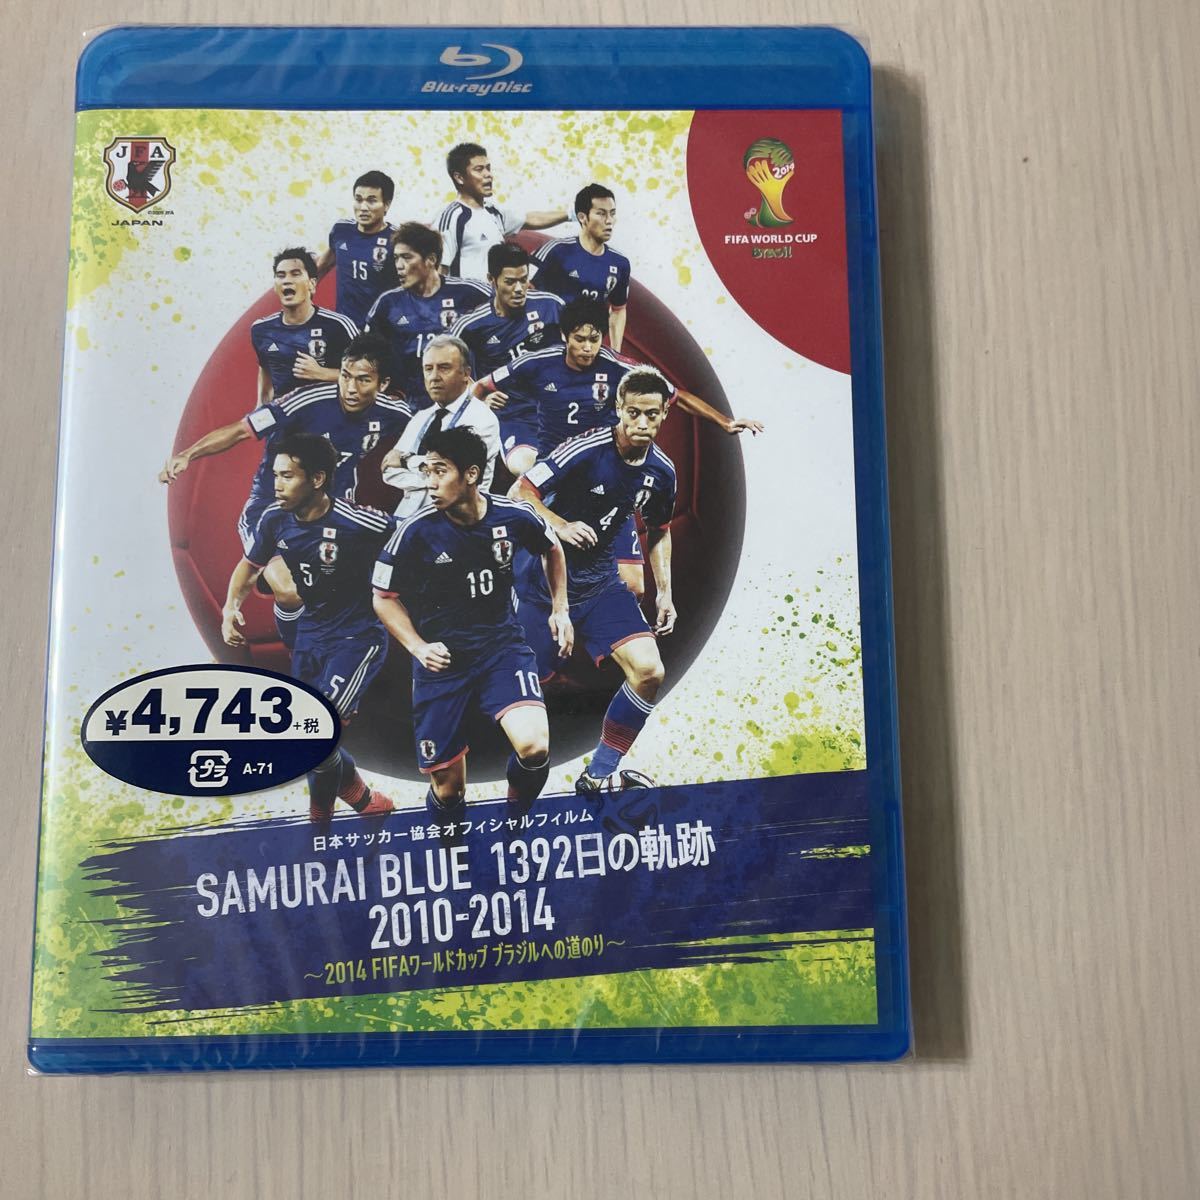 未開封 サッカー日本代表ブルーレイsamurai Blue 1392日の軌跡10 14 14 Fifa ワールドカップブラジルへの道のり 日本代购 买对网